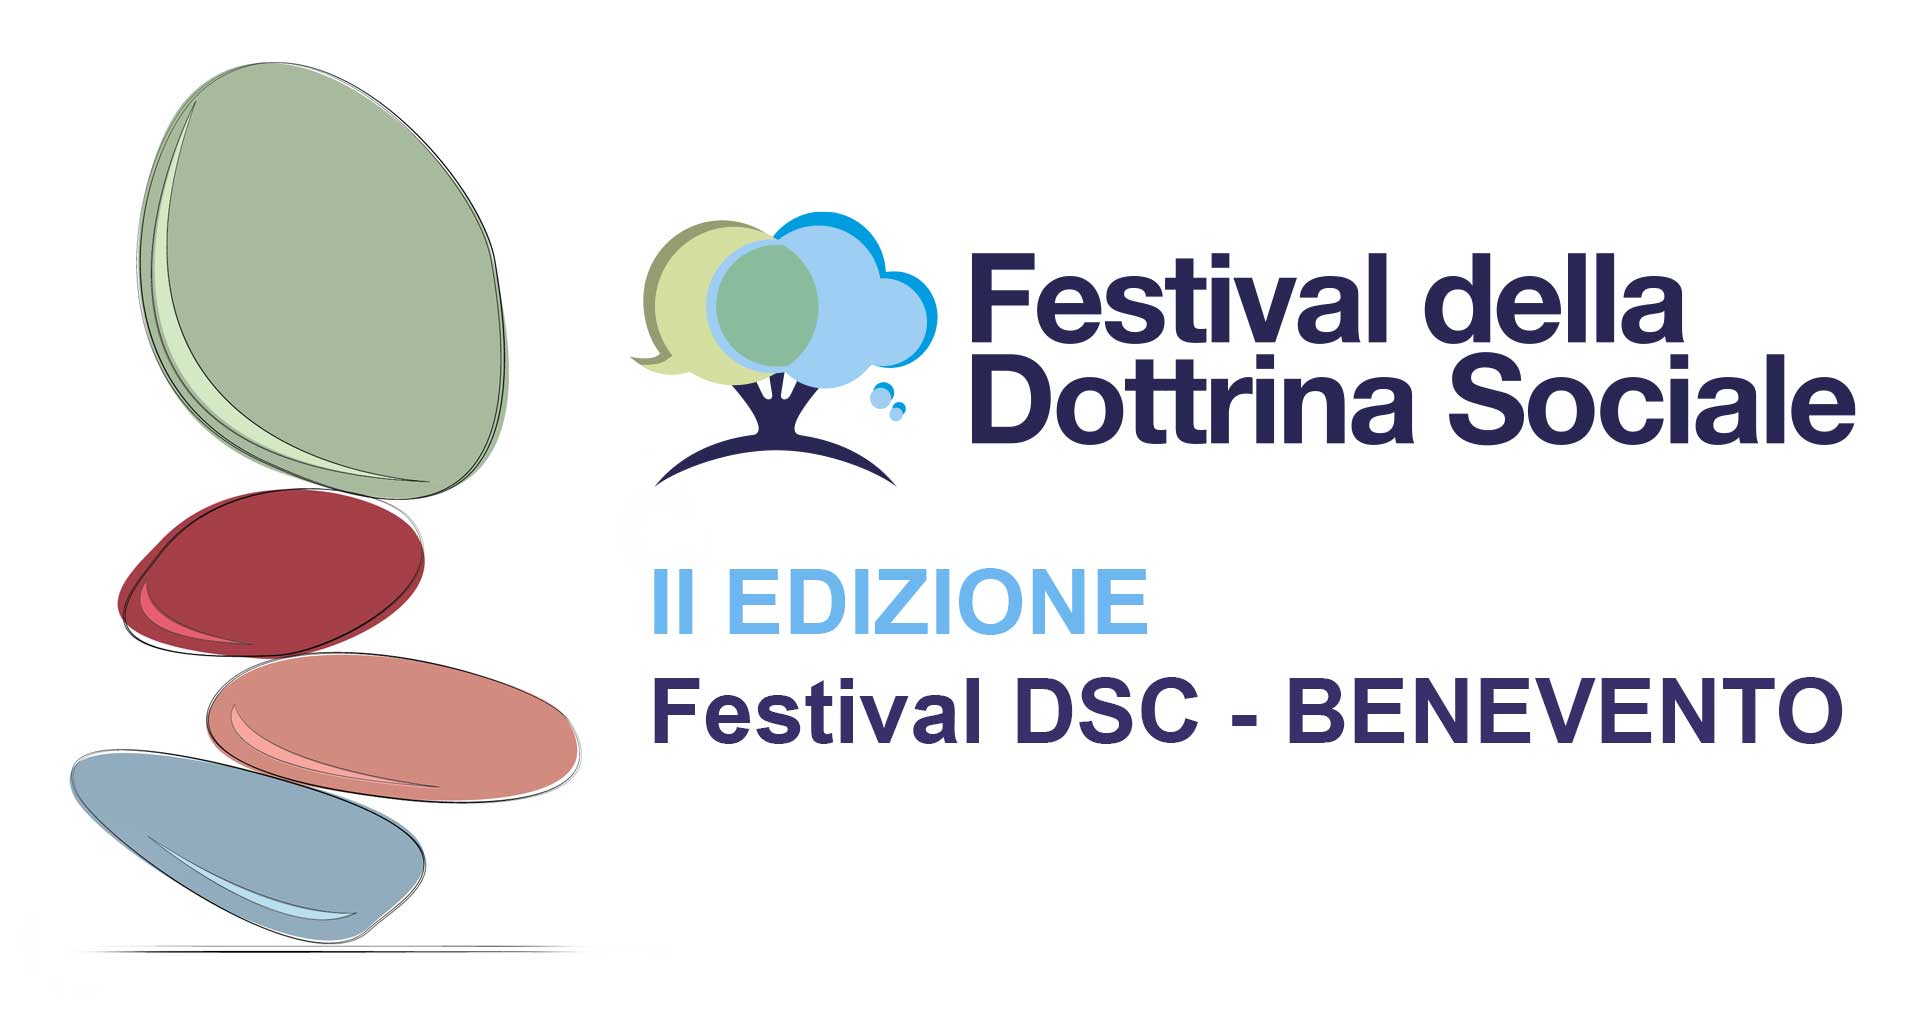 II Edizione Festival DSC Benevento